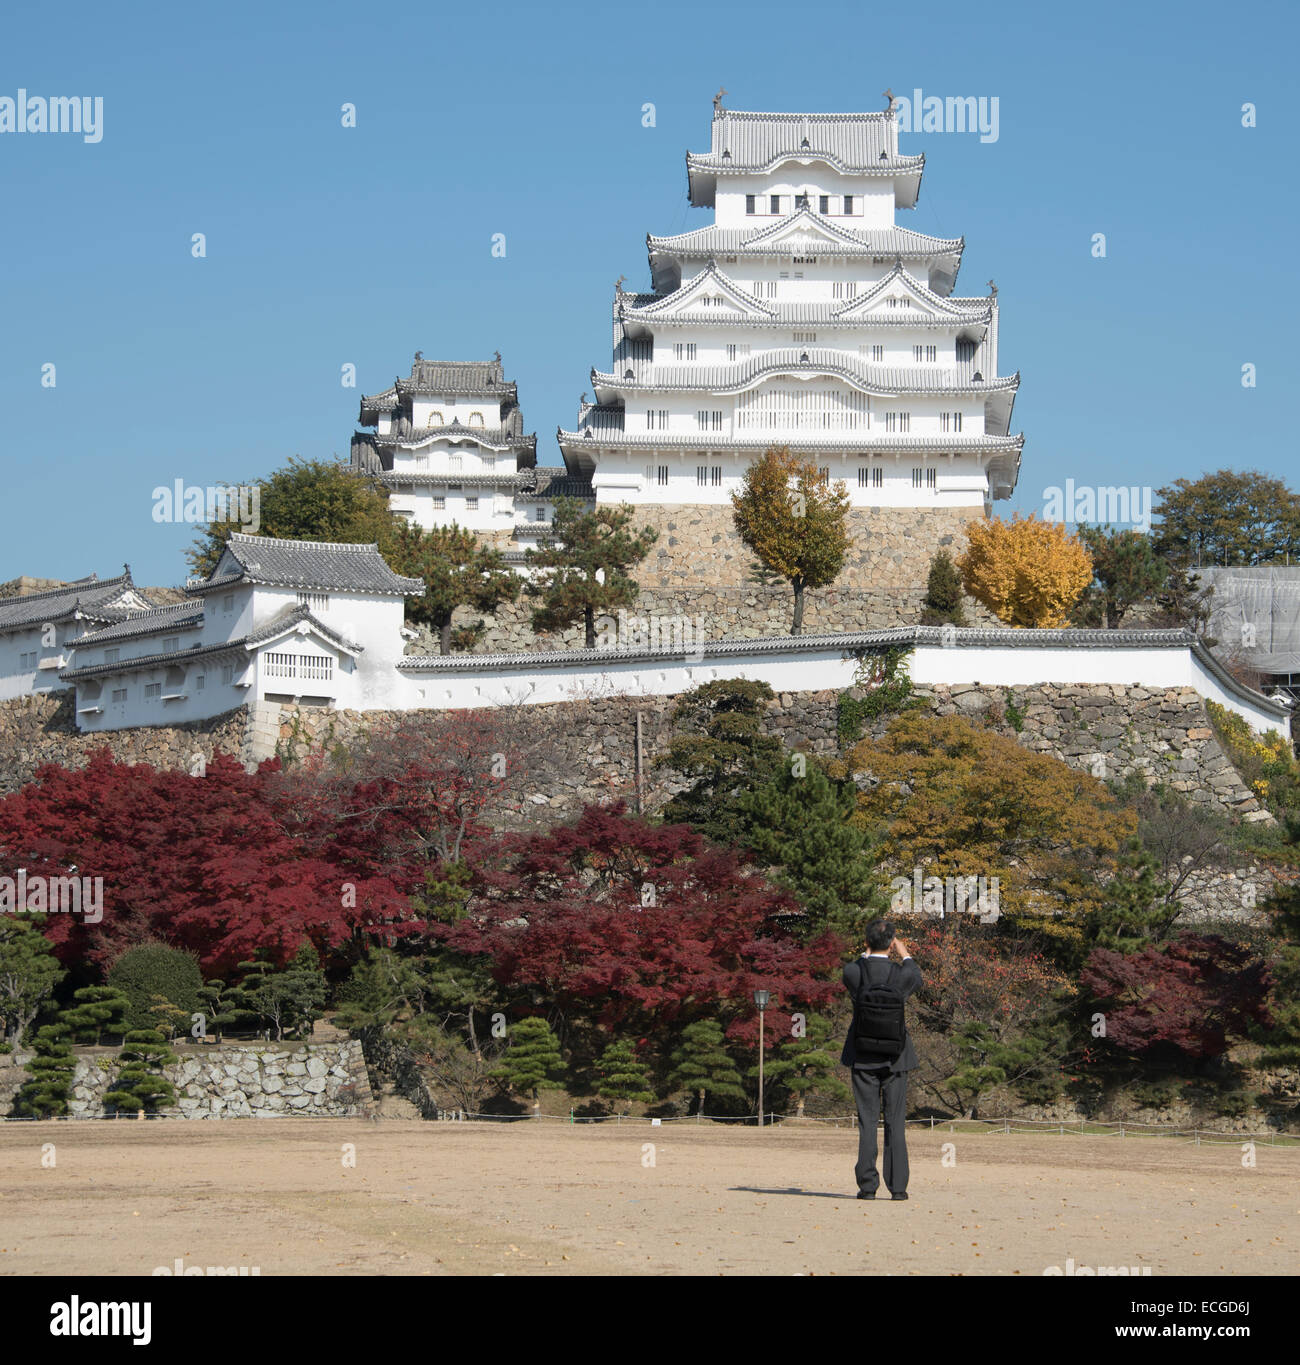 Le château de Himeji restauré ouverture en mars 2015, Himeji, Japon. Banque D'Images